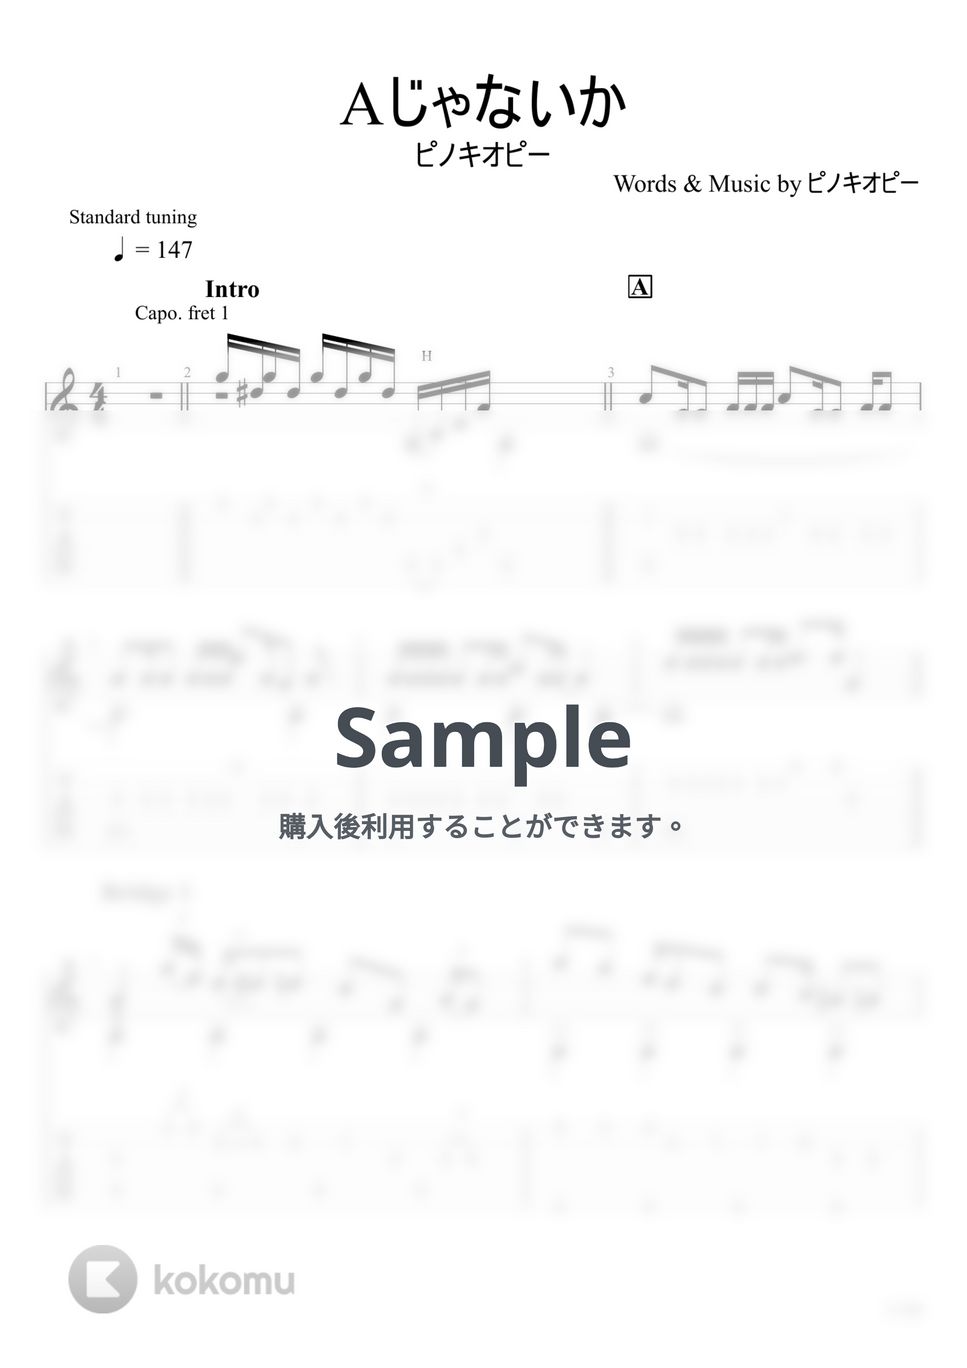 ピノキオピー - Aじゃないか (ソロギター) by u3danchou